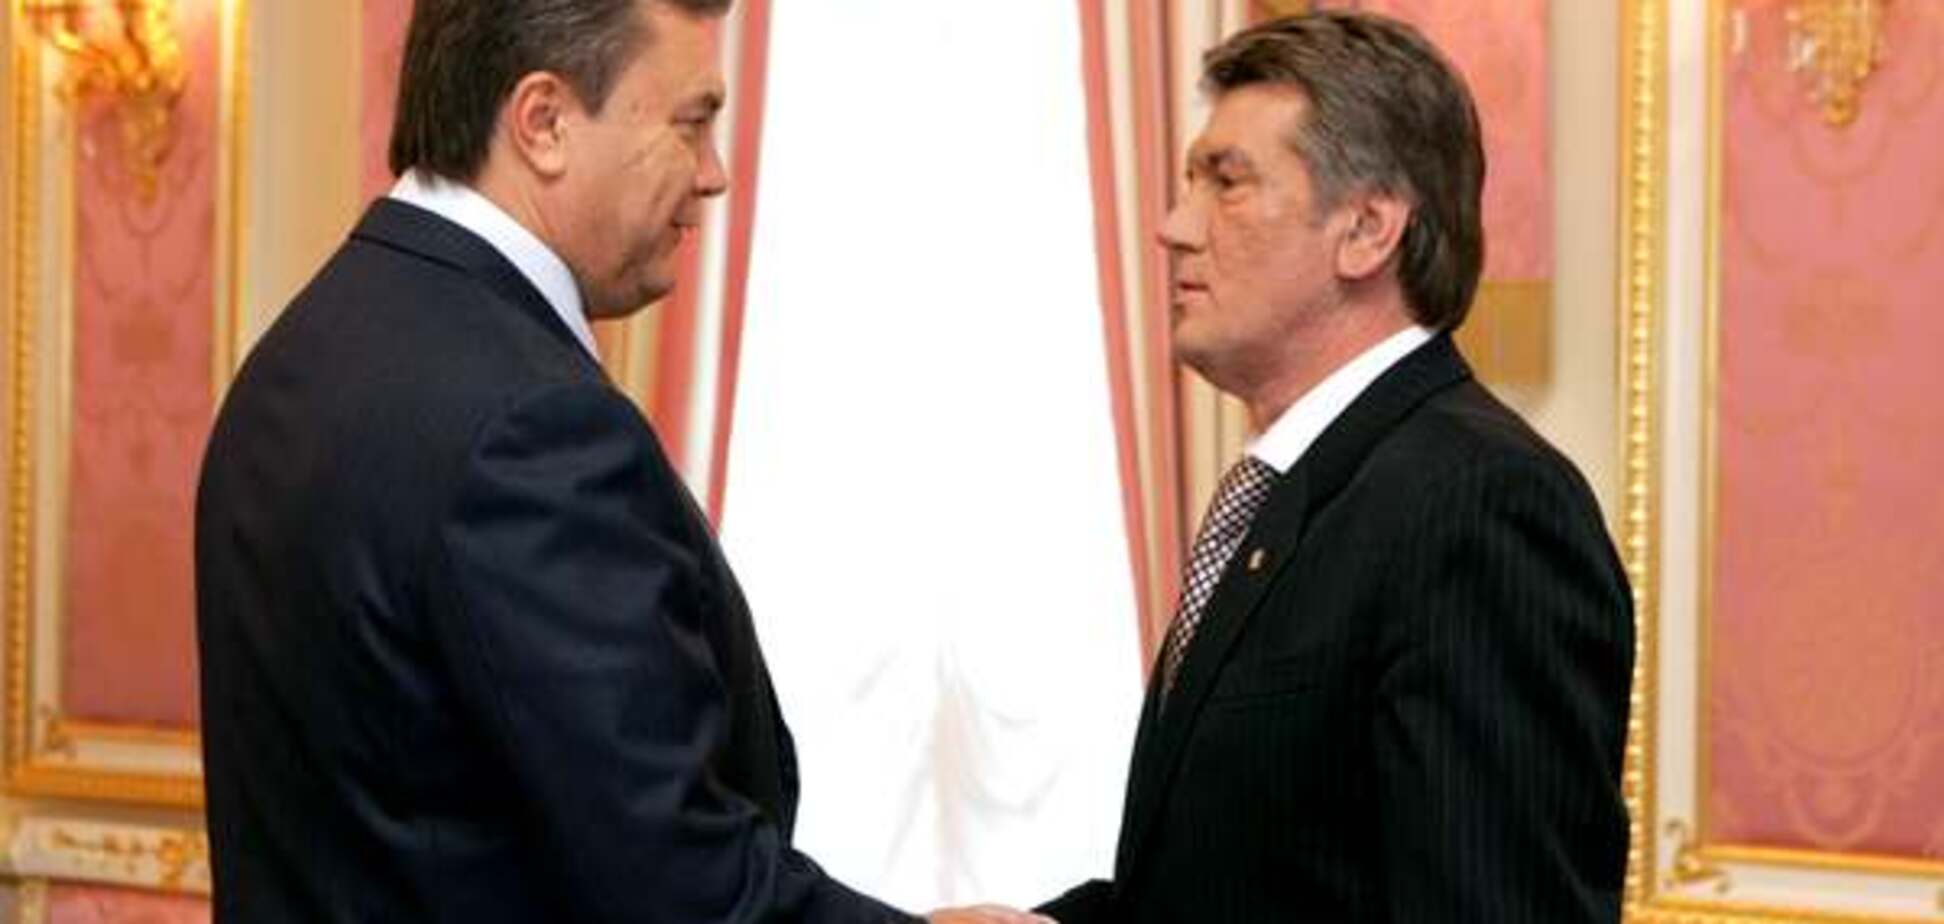 Віктор Ющенко та Віктор Янукович